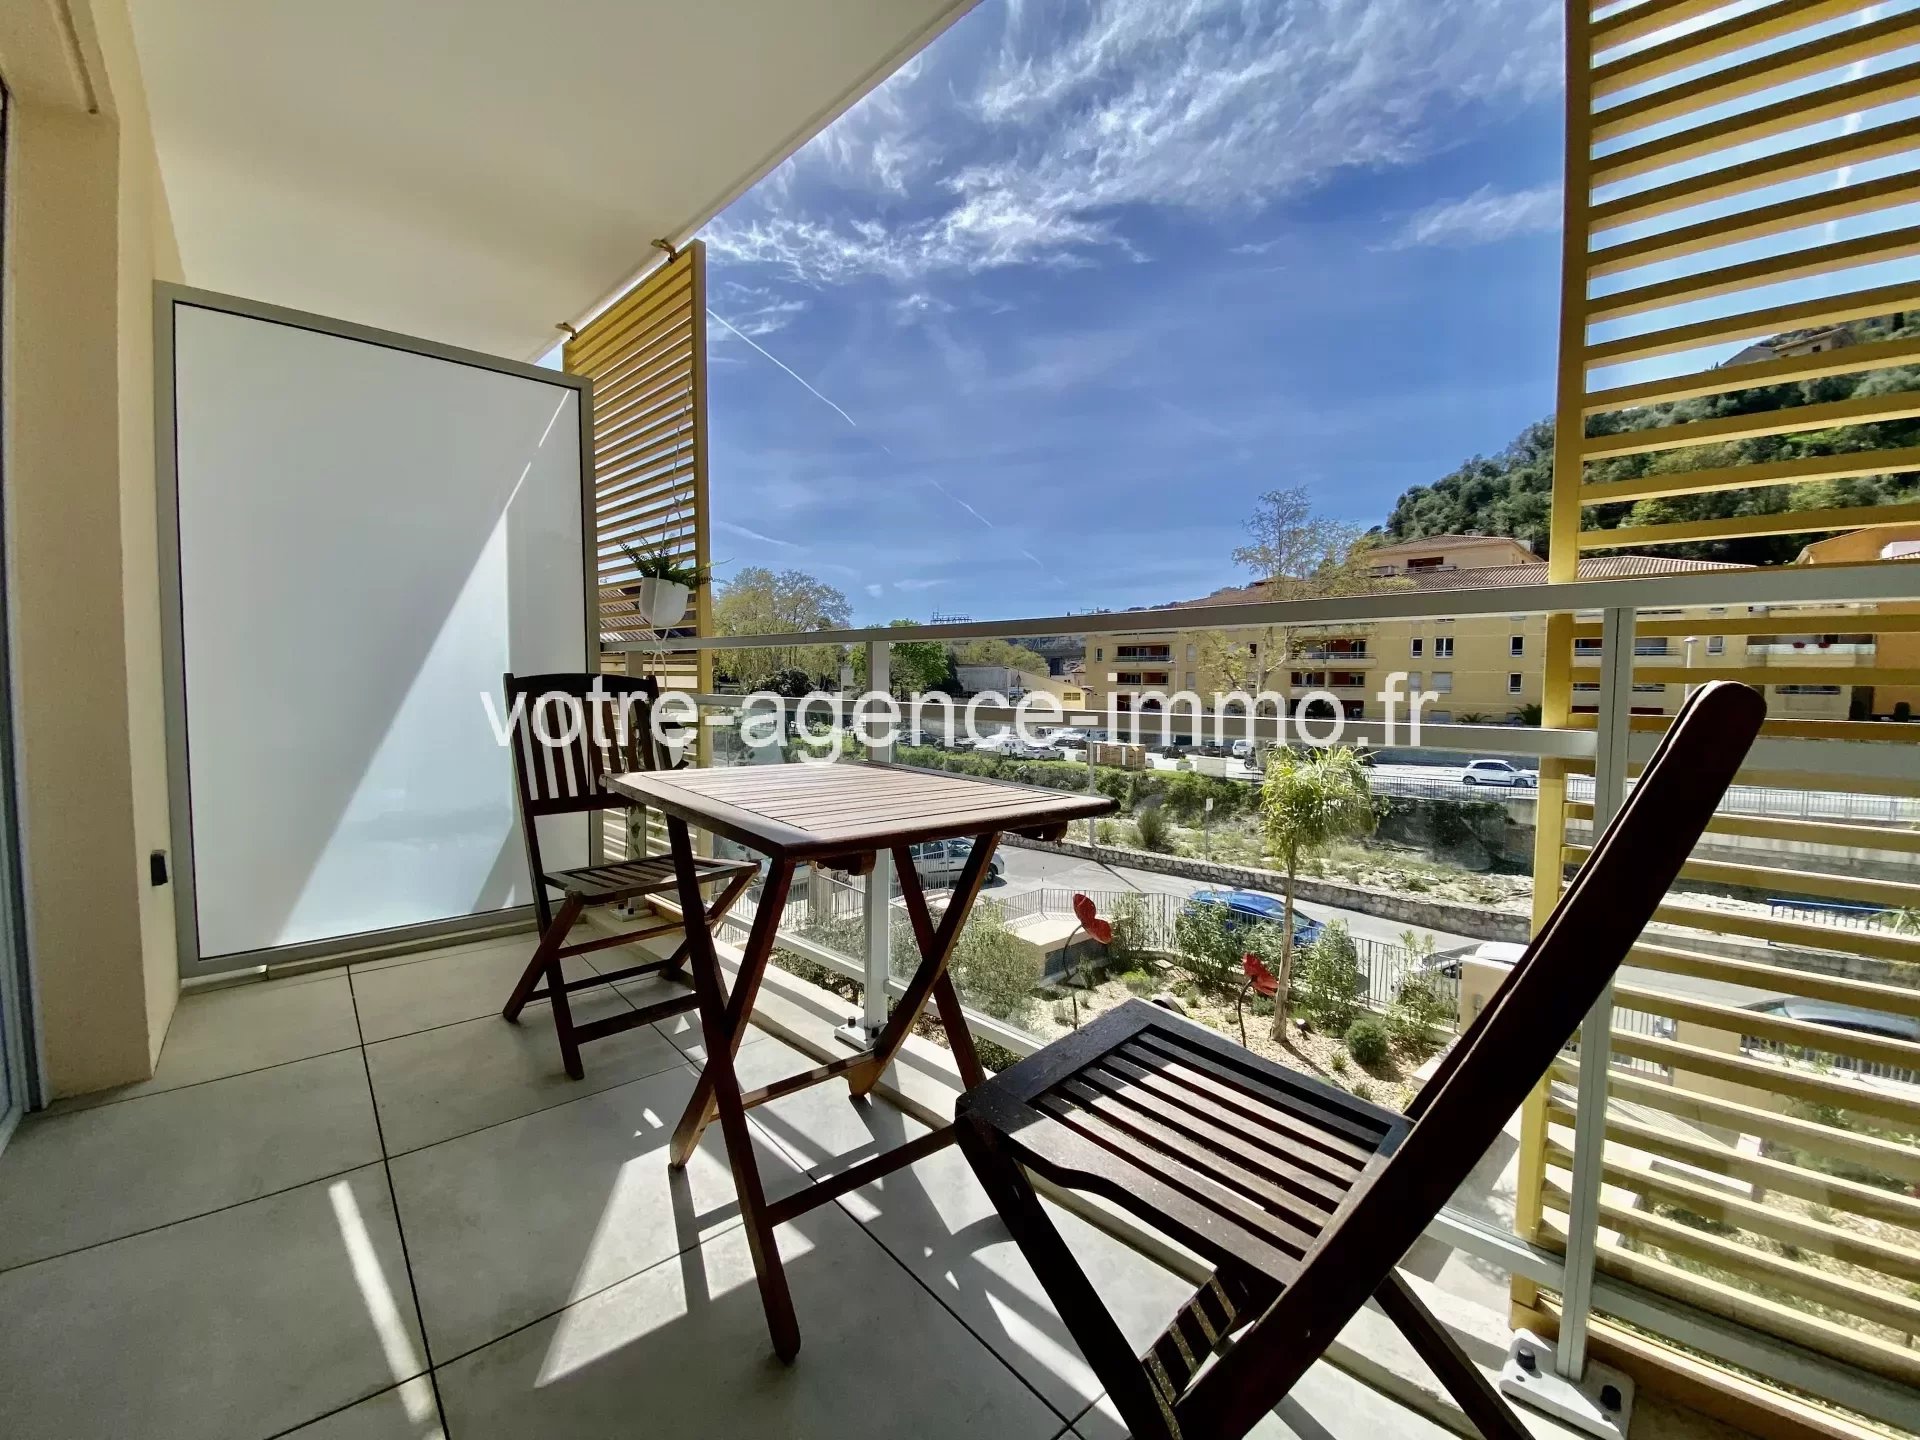 St André de la Roche- Location de studio meublé avec balcon et parking à 670€